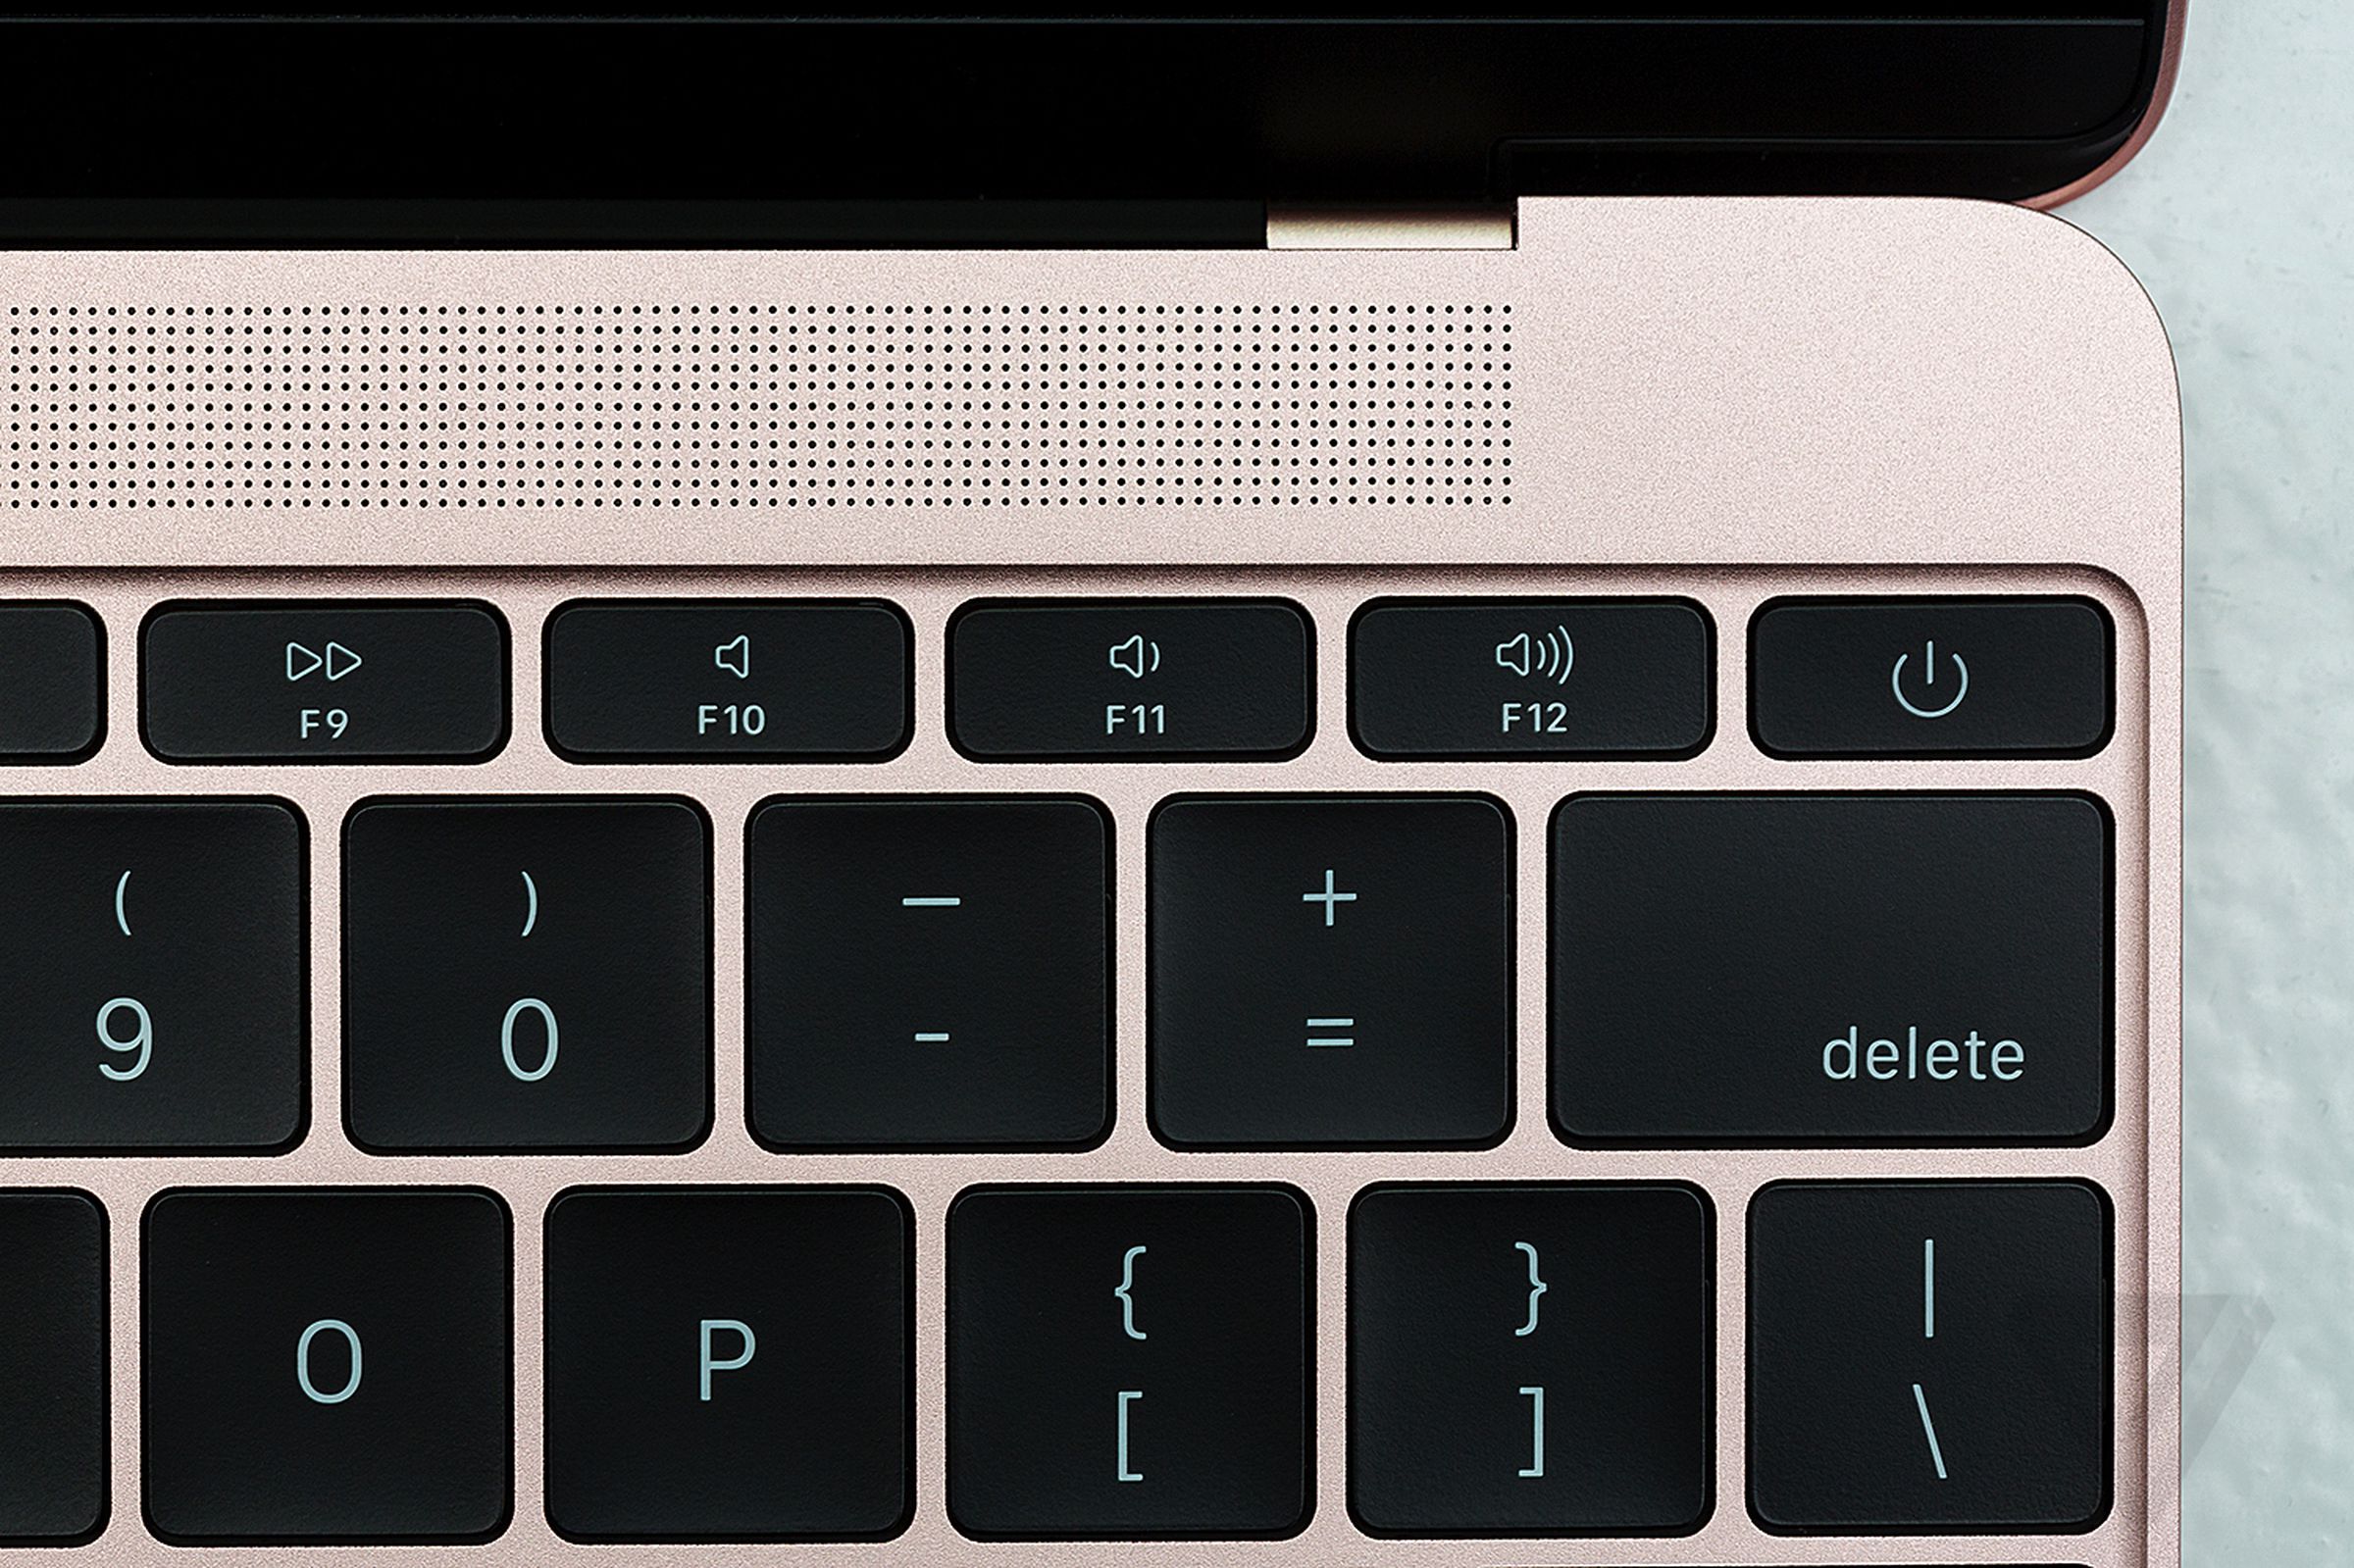 New MacBook 2016 hands-on photos